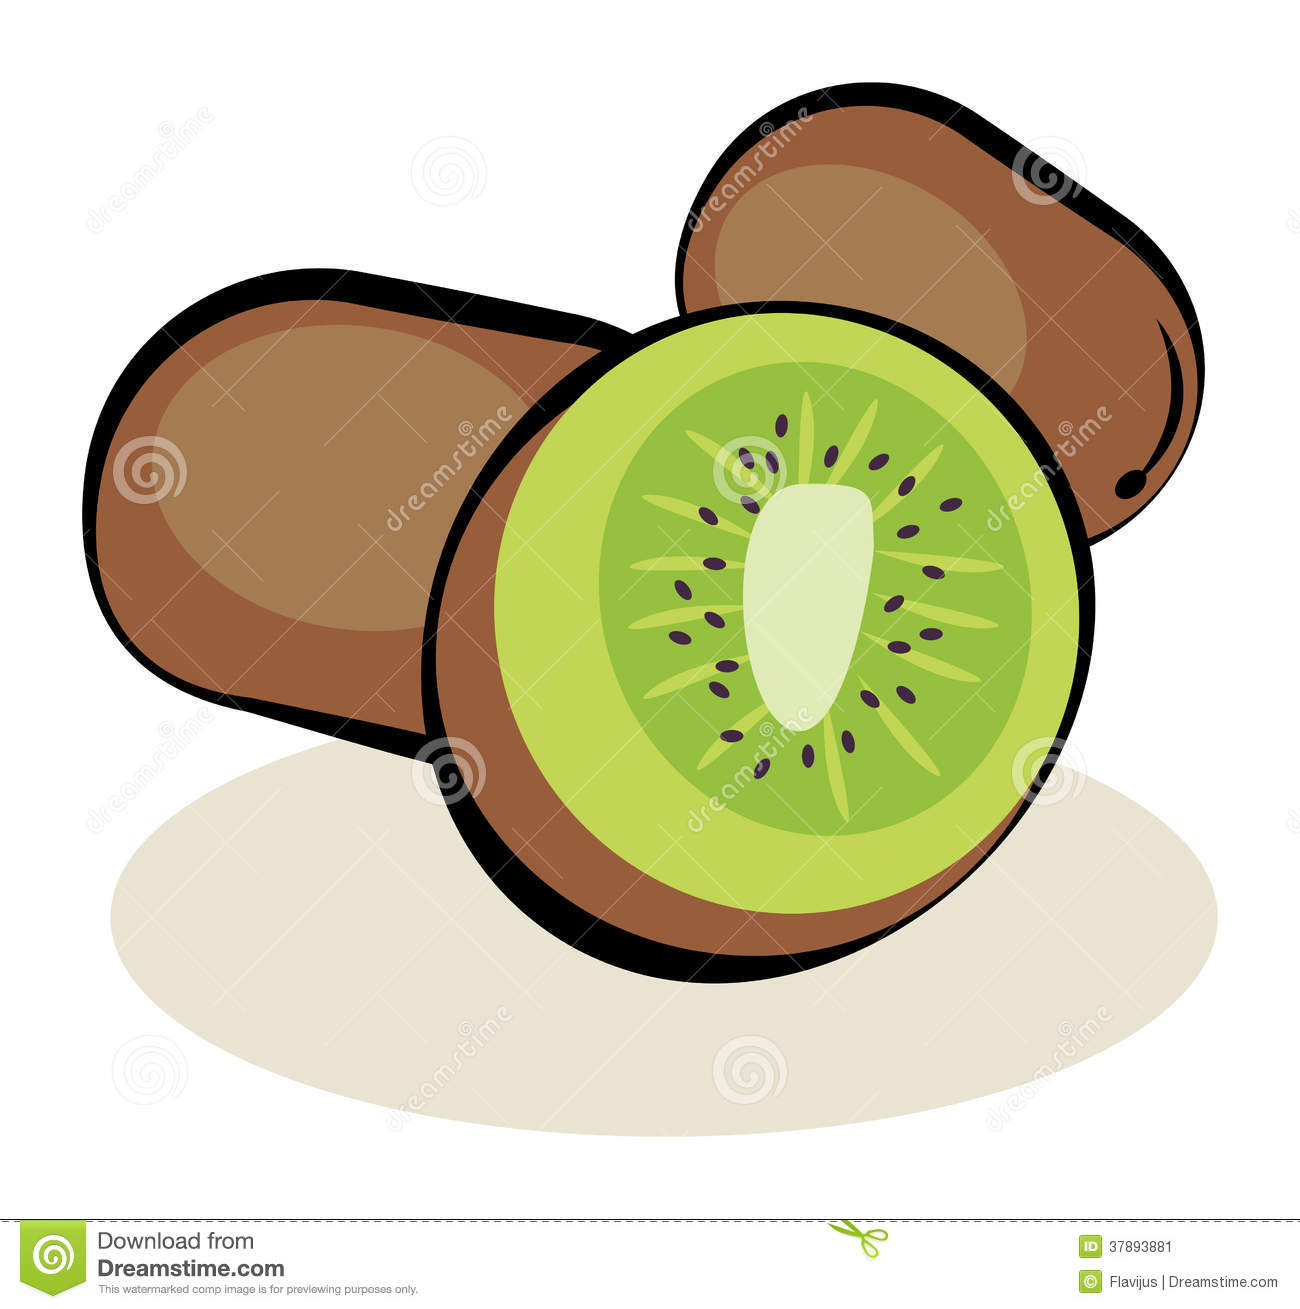 Fruit Kiwi Stock Image   Image  37893881